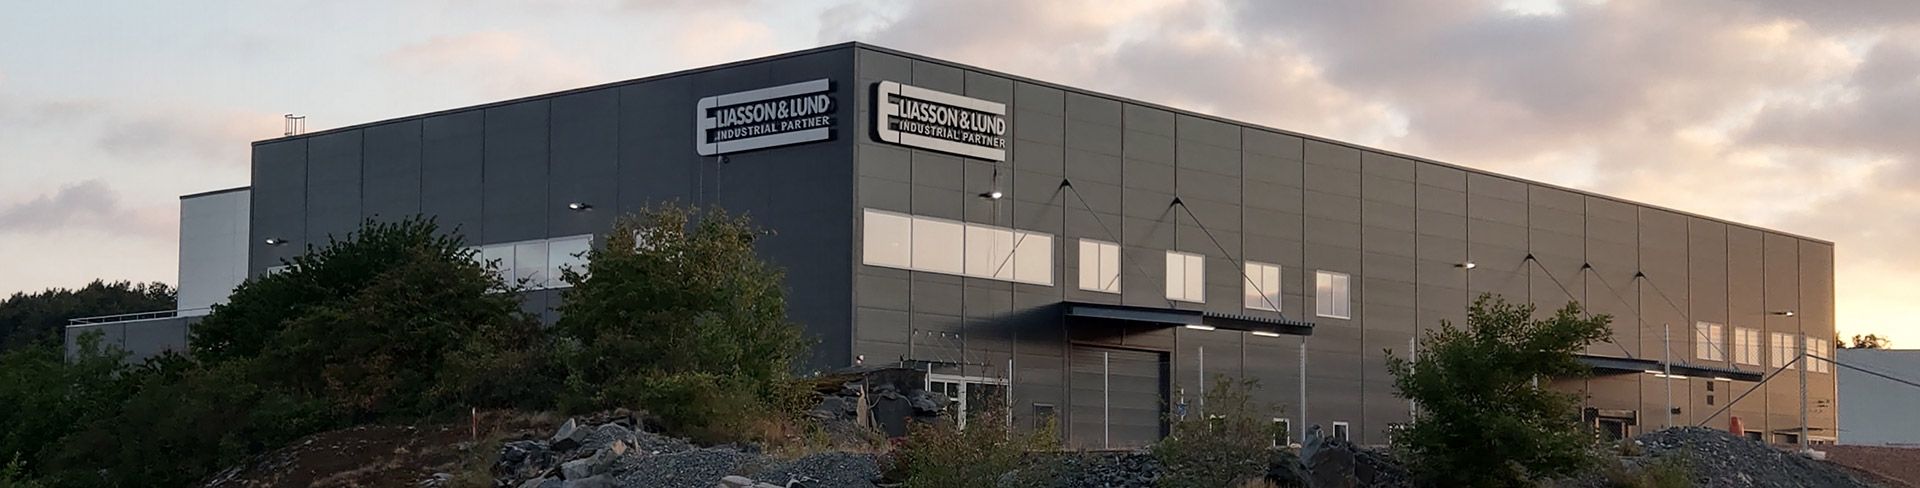 Mekanisk verkstad Eliasson & Lund i Göteborg